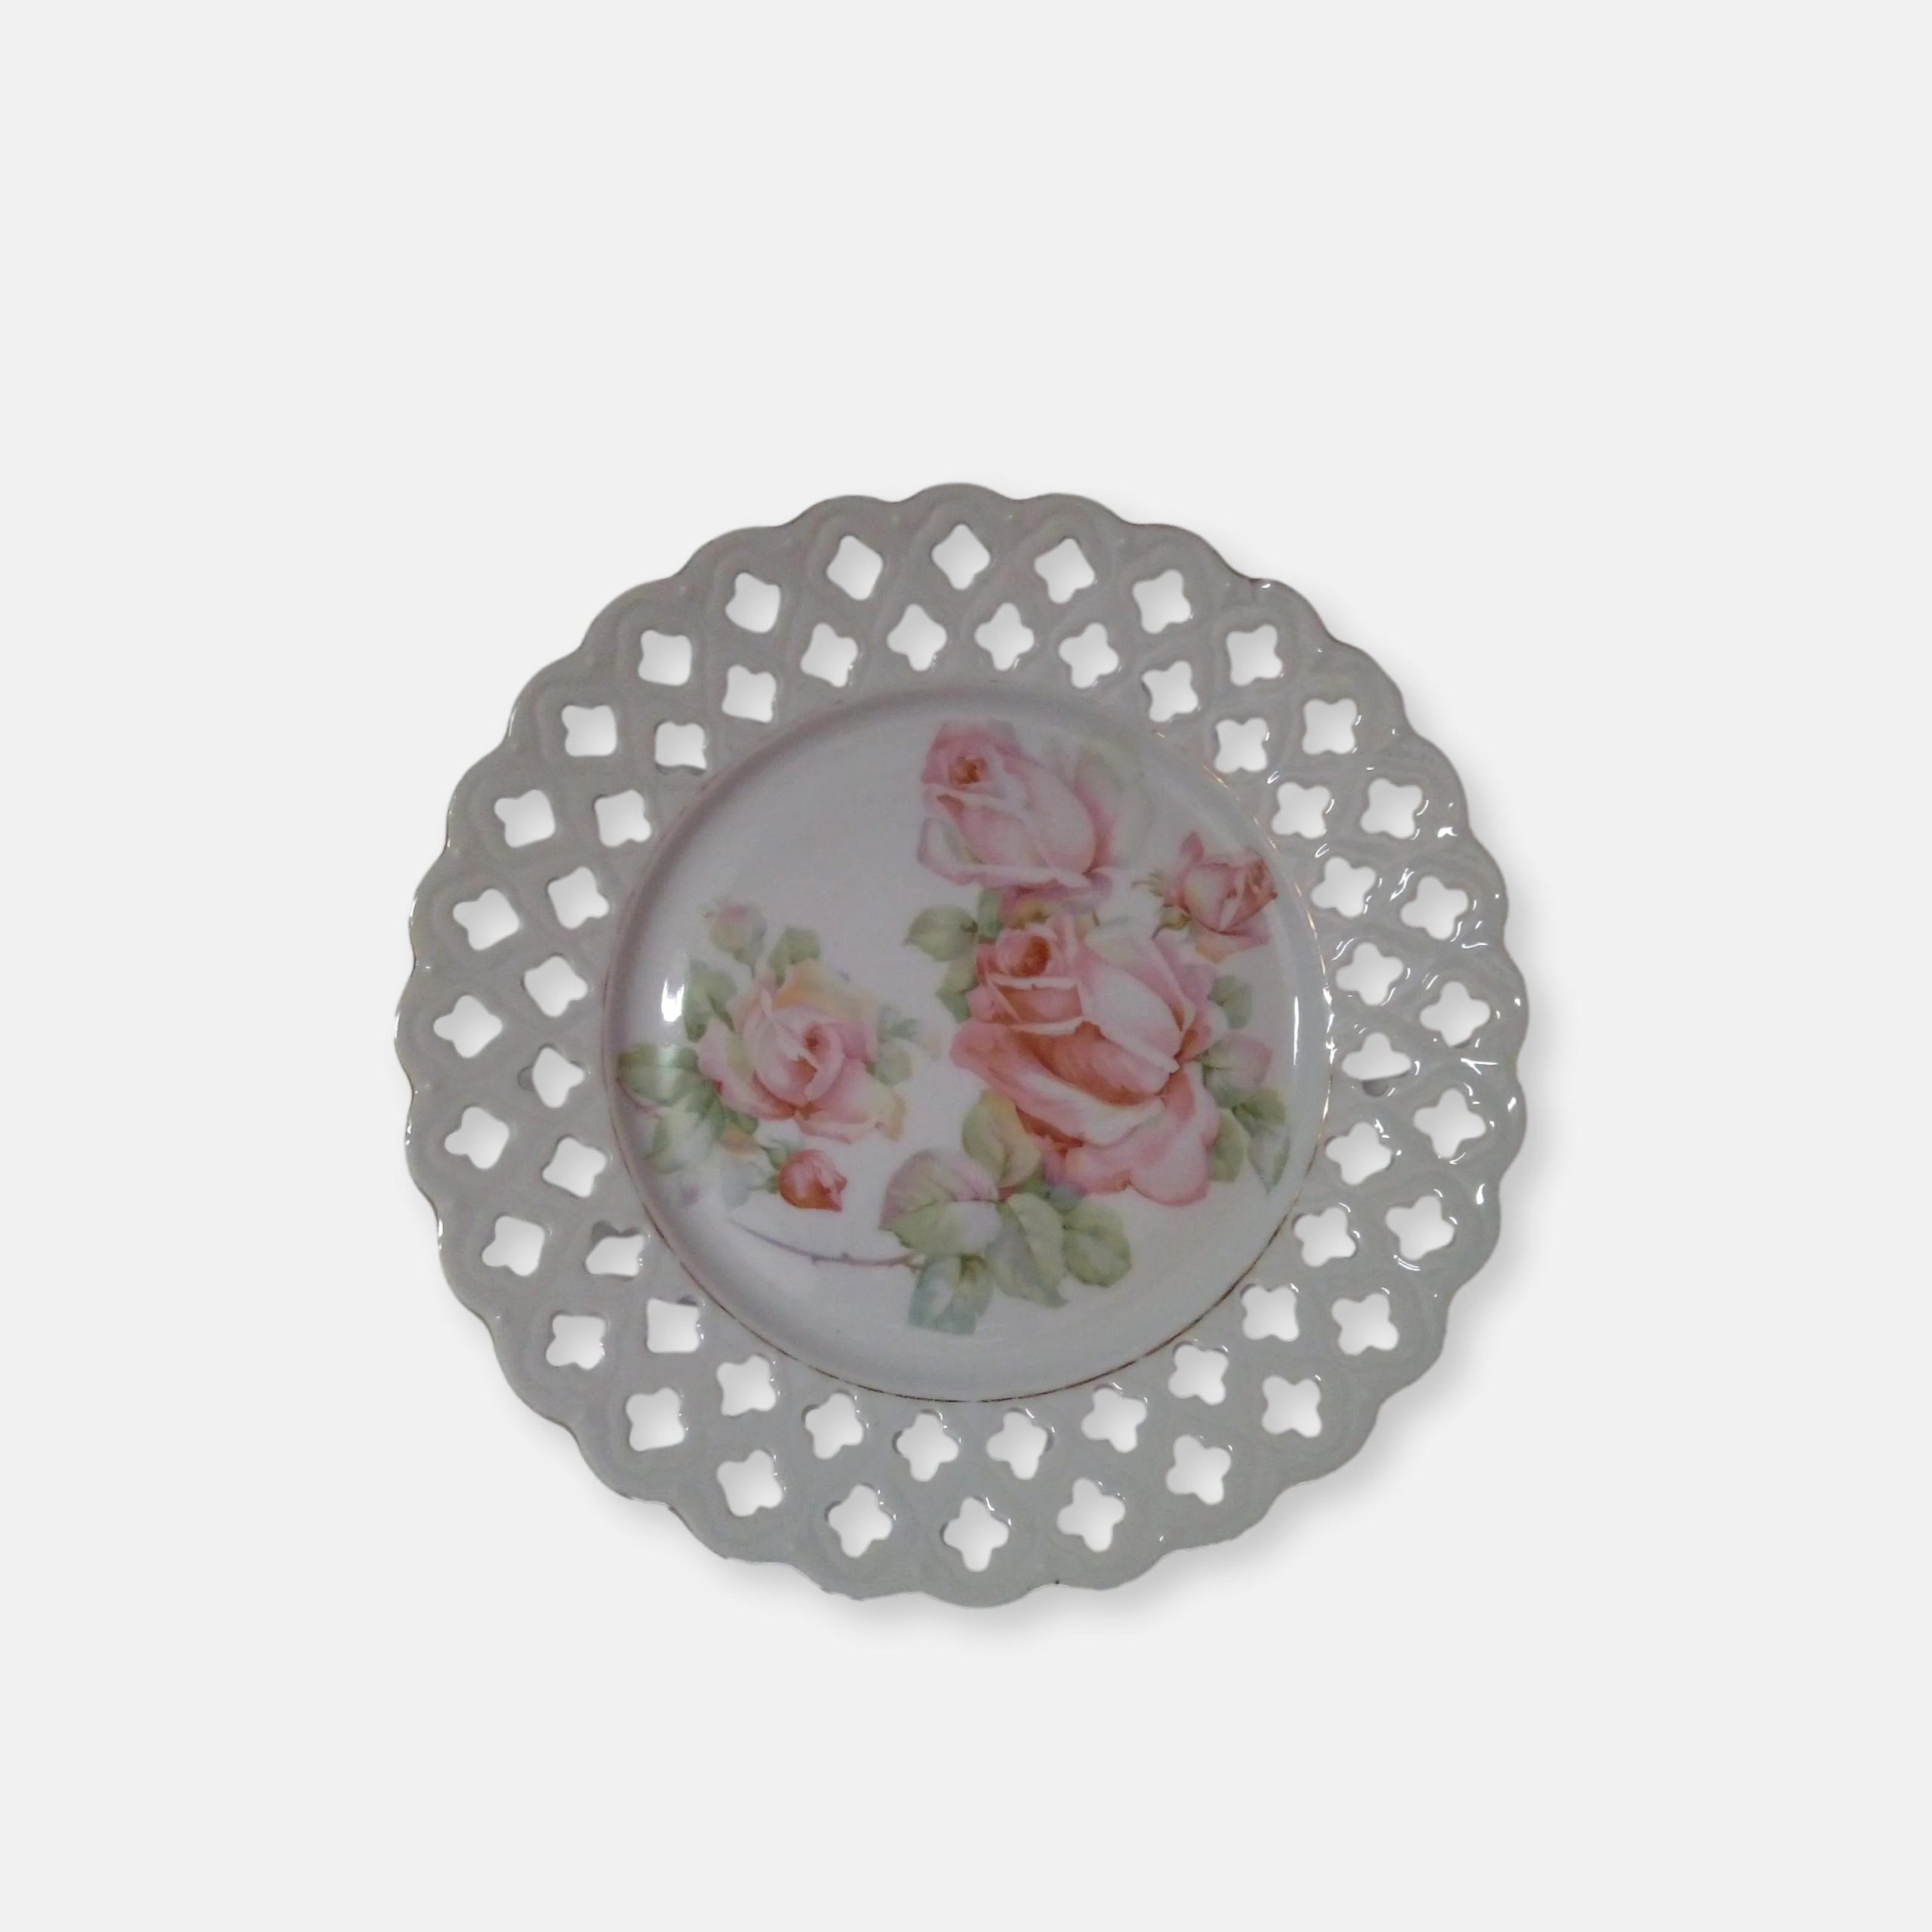 Assiette en porcelaine ajourée décorée de roses